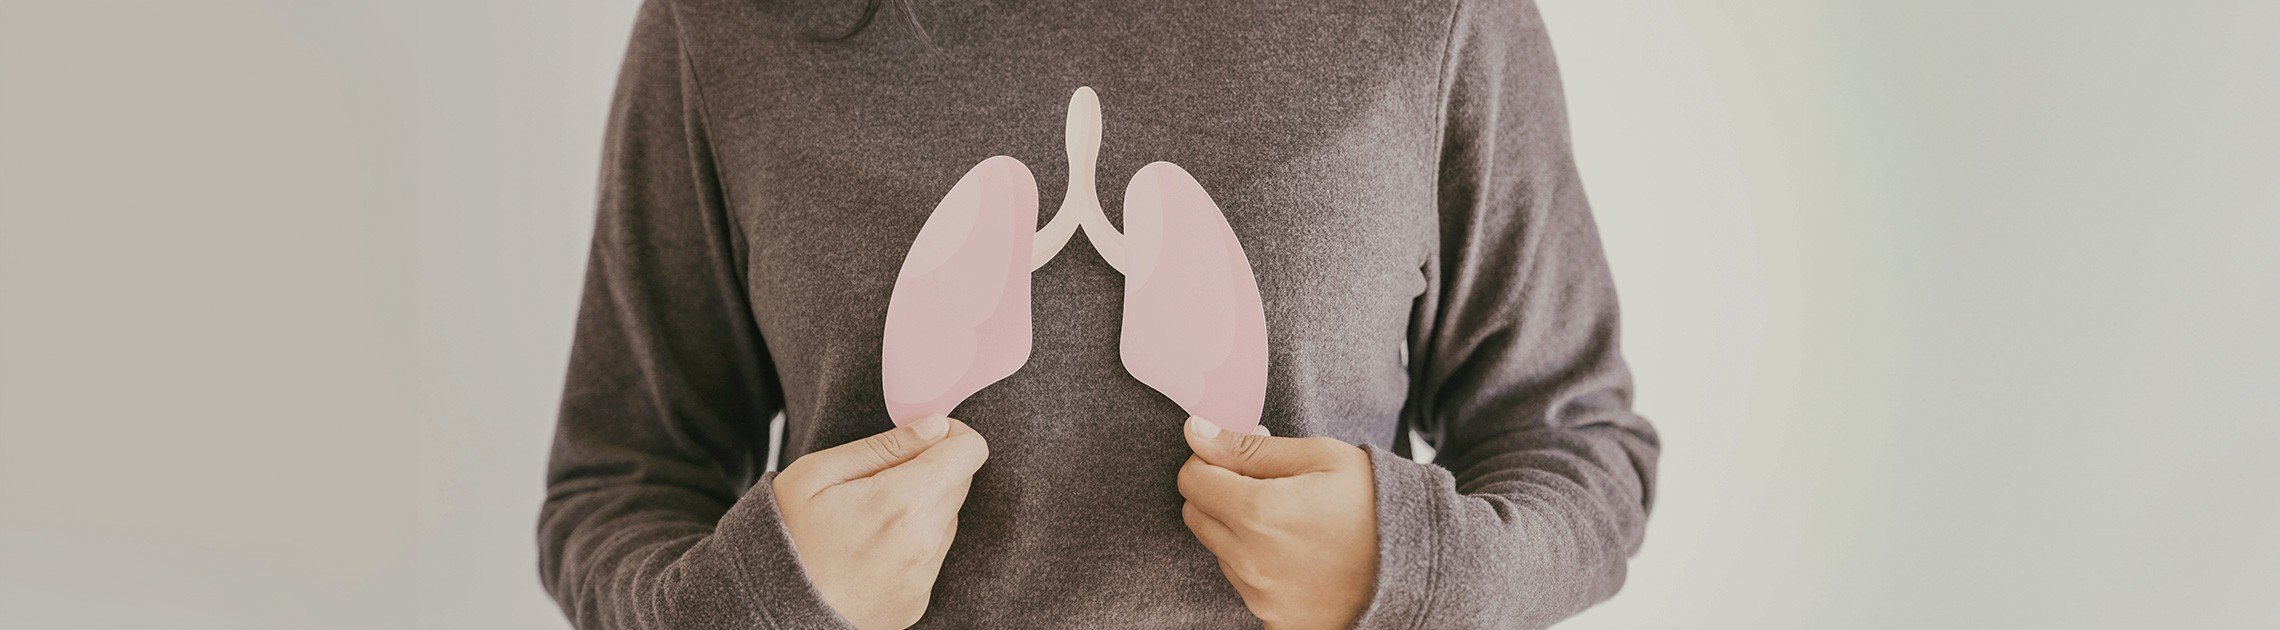 imagen donde muestra un dibujo de pulmones relacionado con el articulo de consejos para recuperar la capacidad pulmonar 